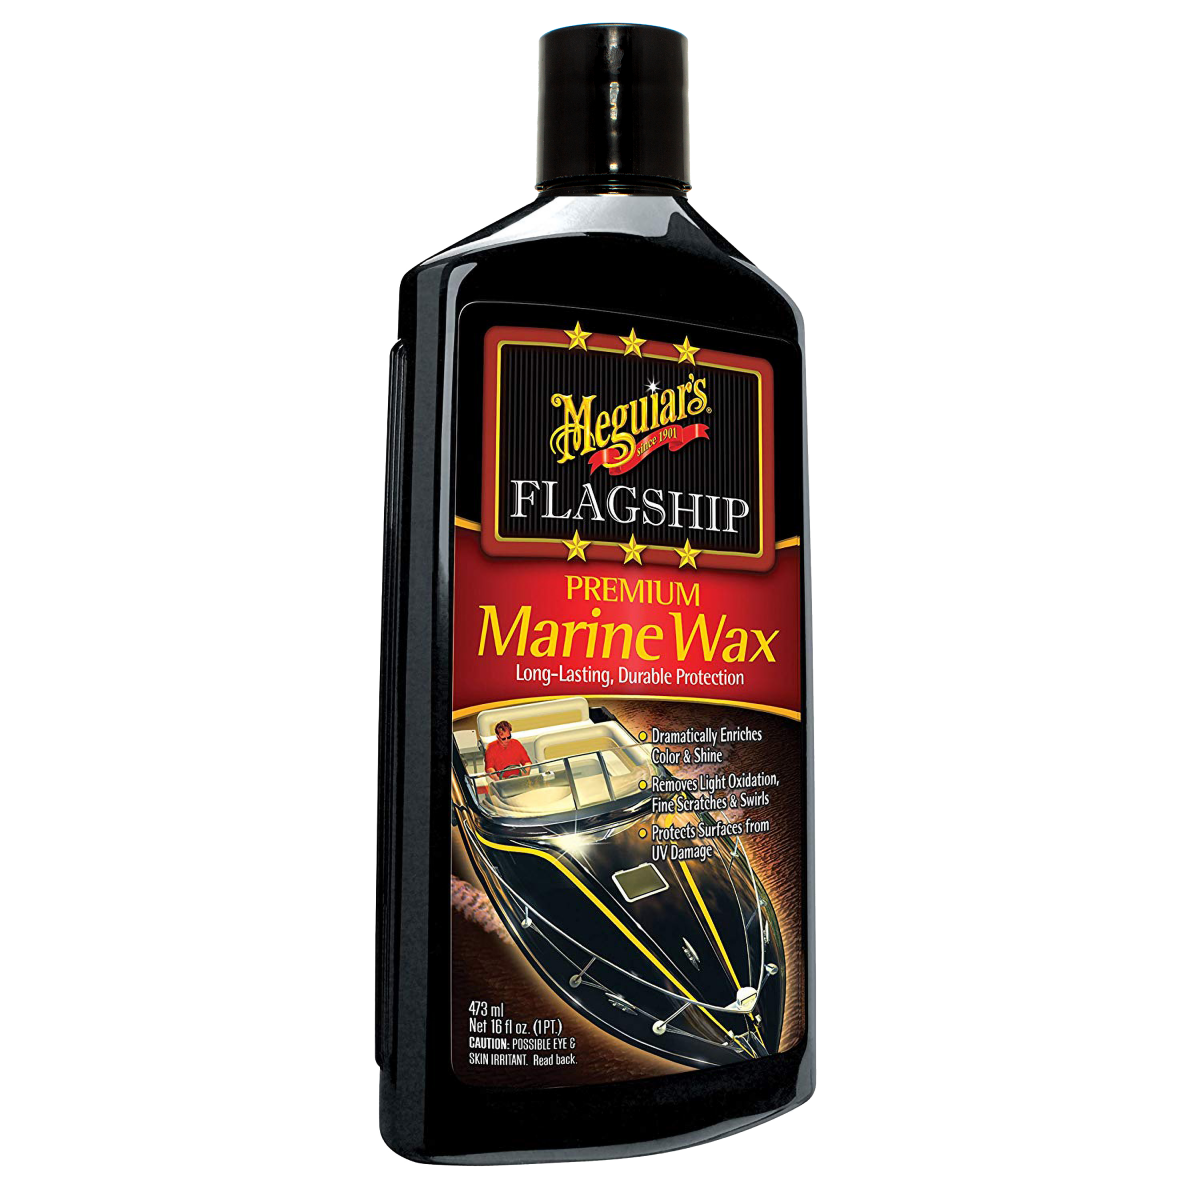  Meguiar's Flagship Premium Marine Wax